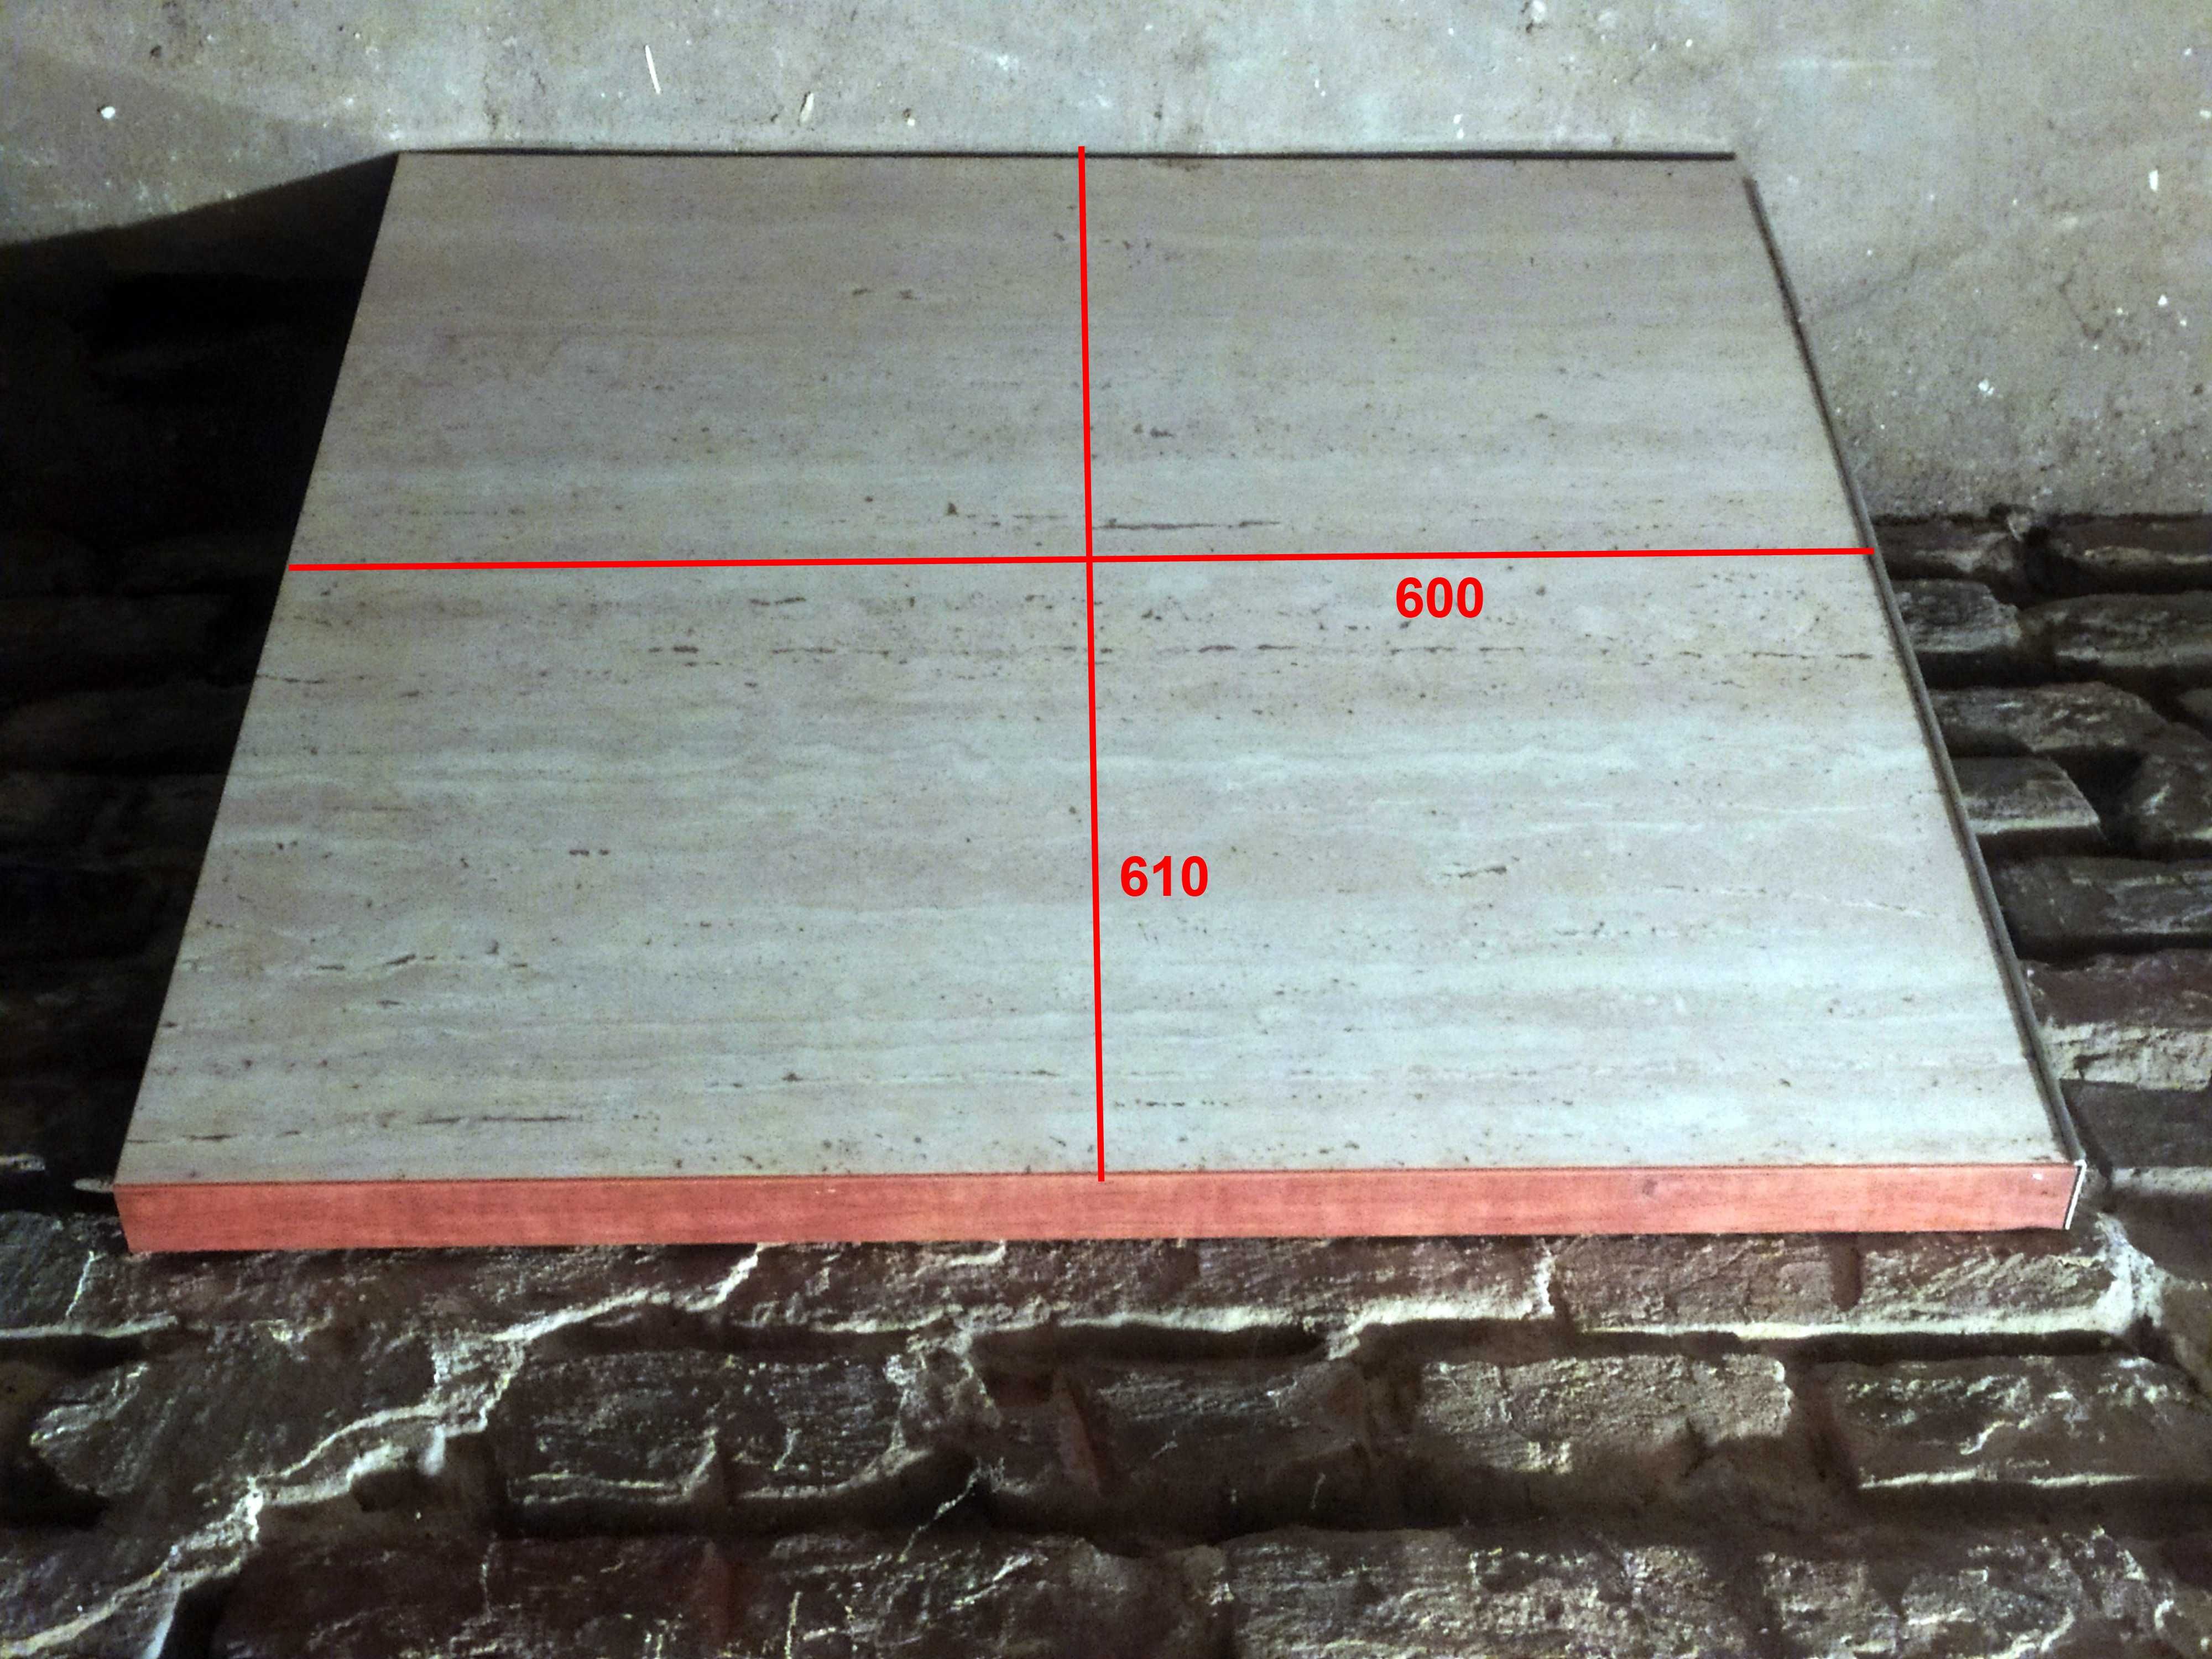 Blat kuchenny Kronpol z wycięciem pod zlew: 217 x 113 cm i 60 x 61 cm